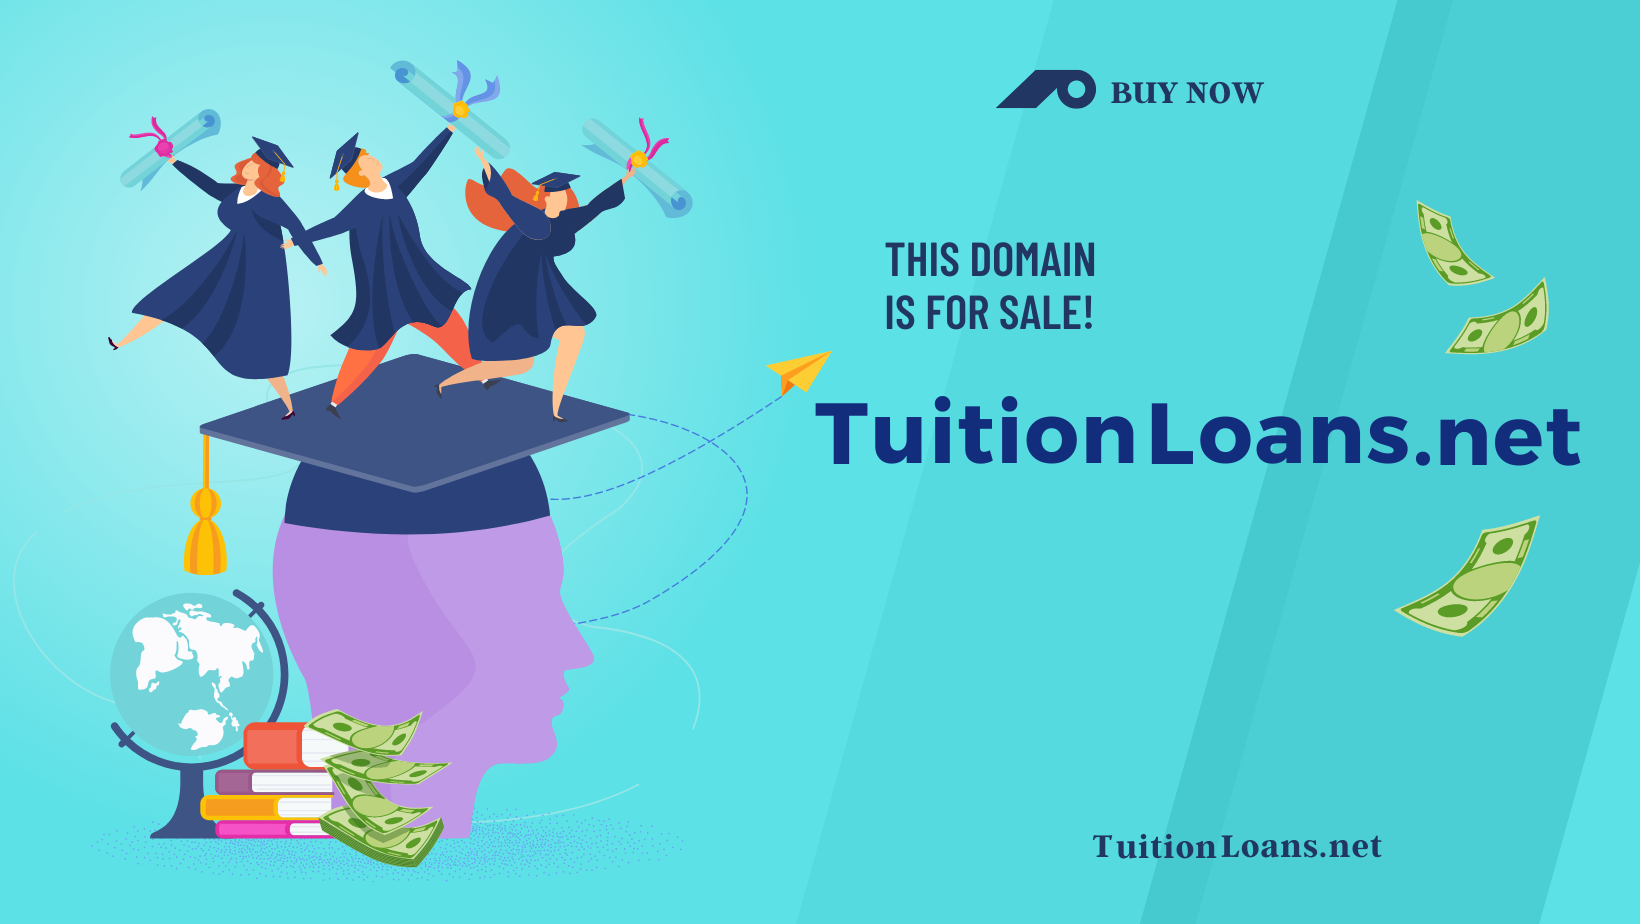 TuitionLoans.net